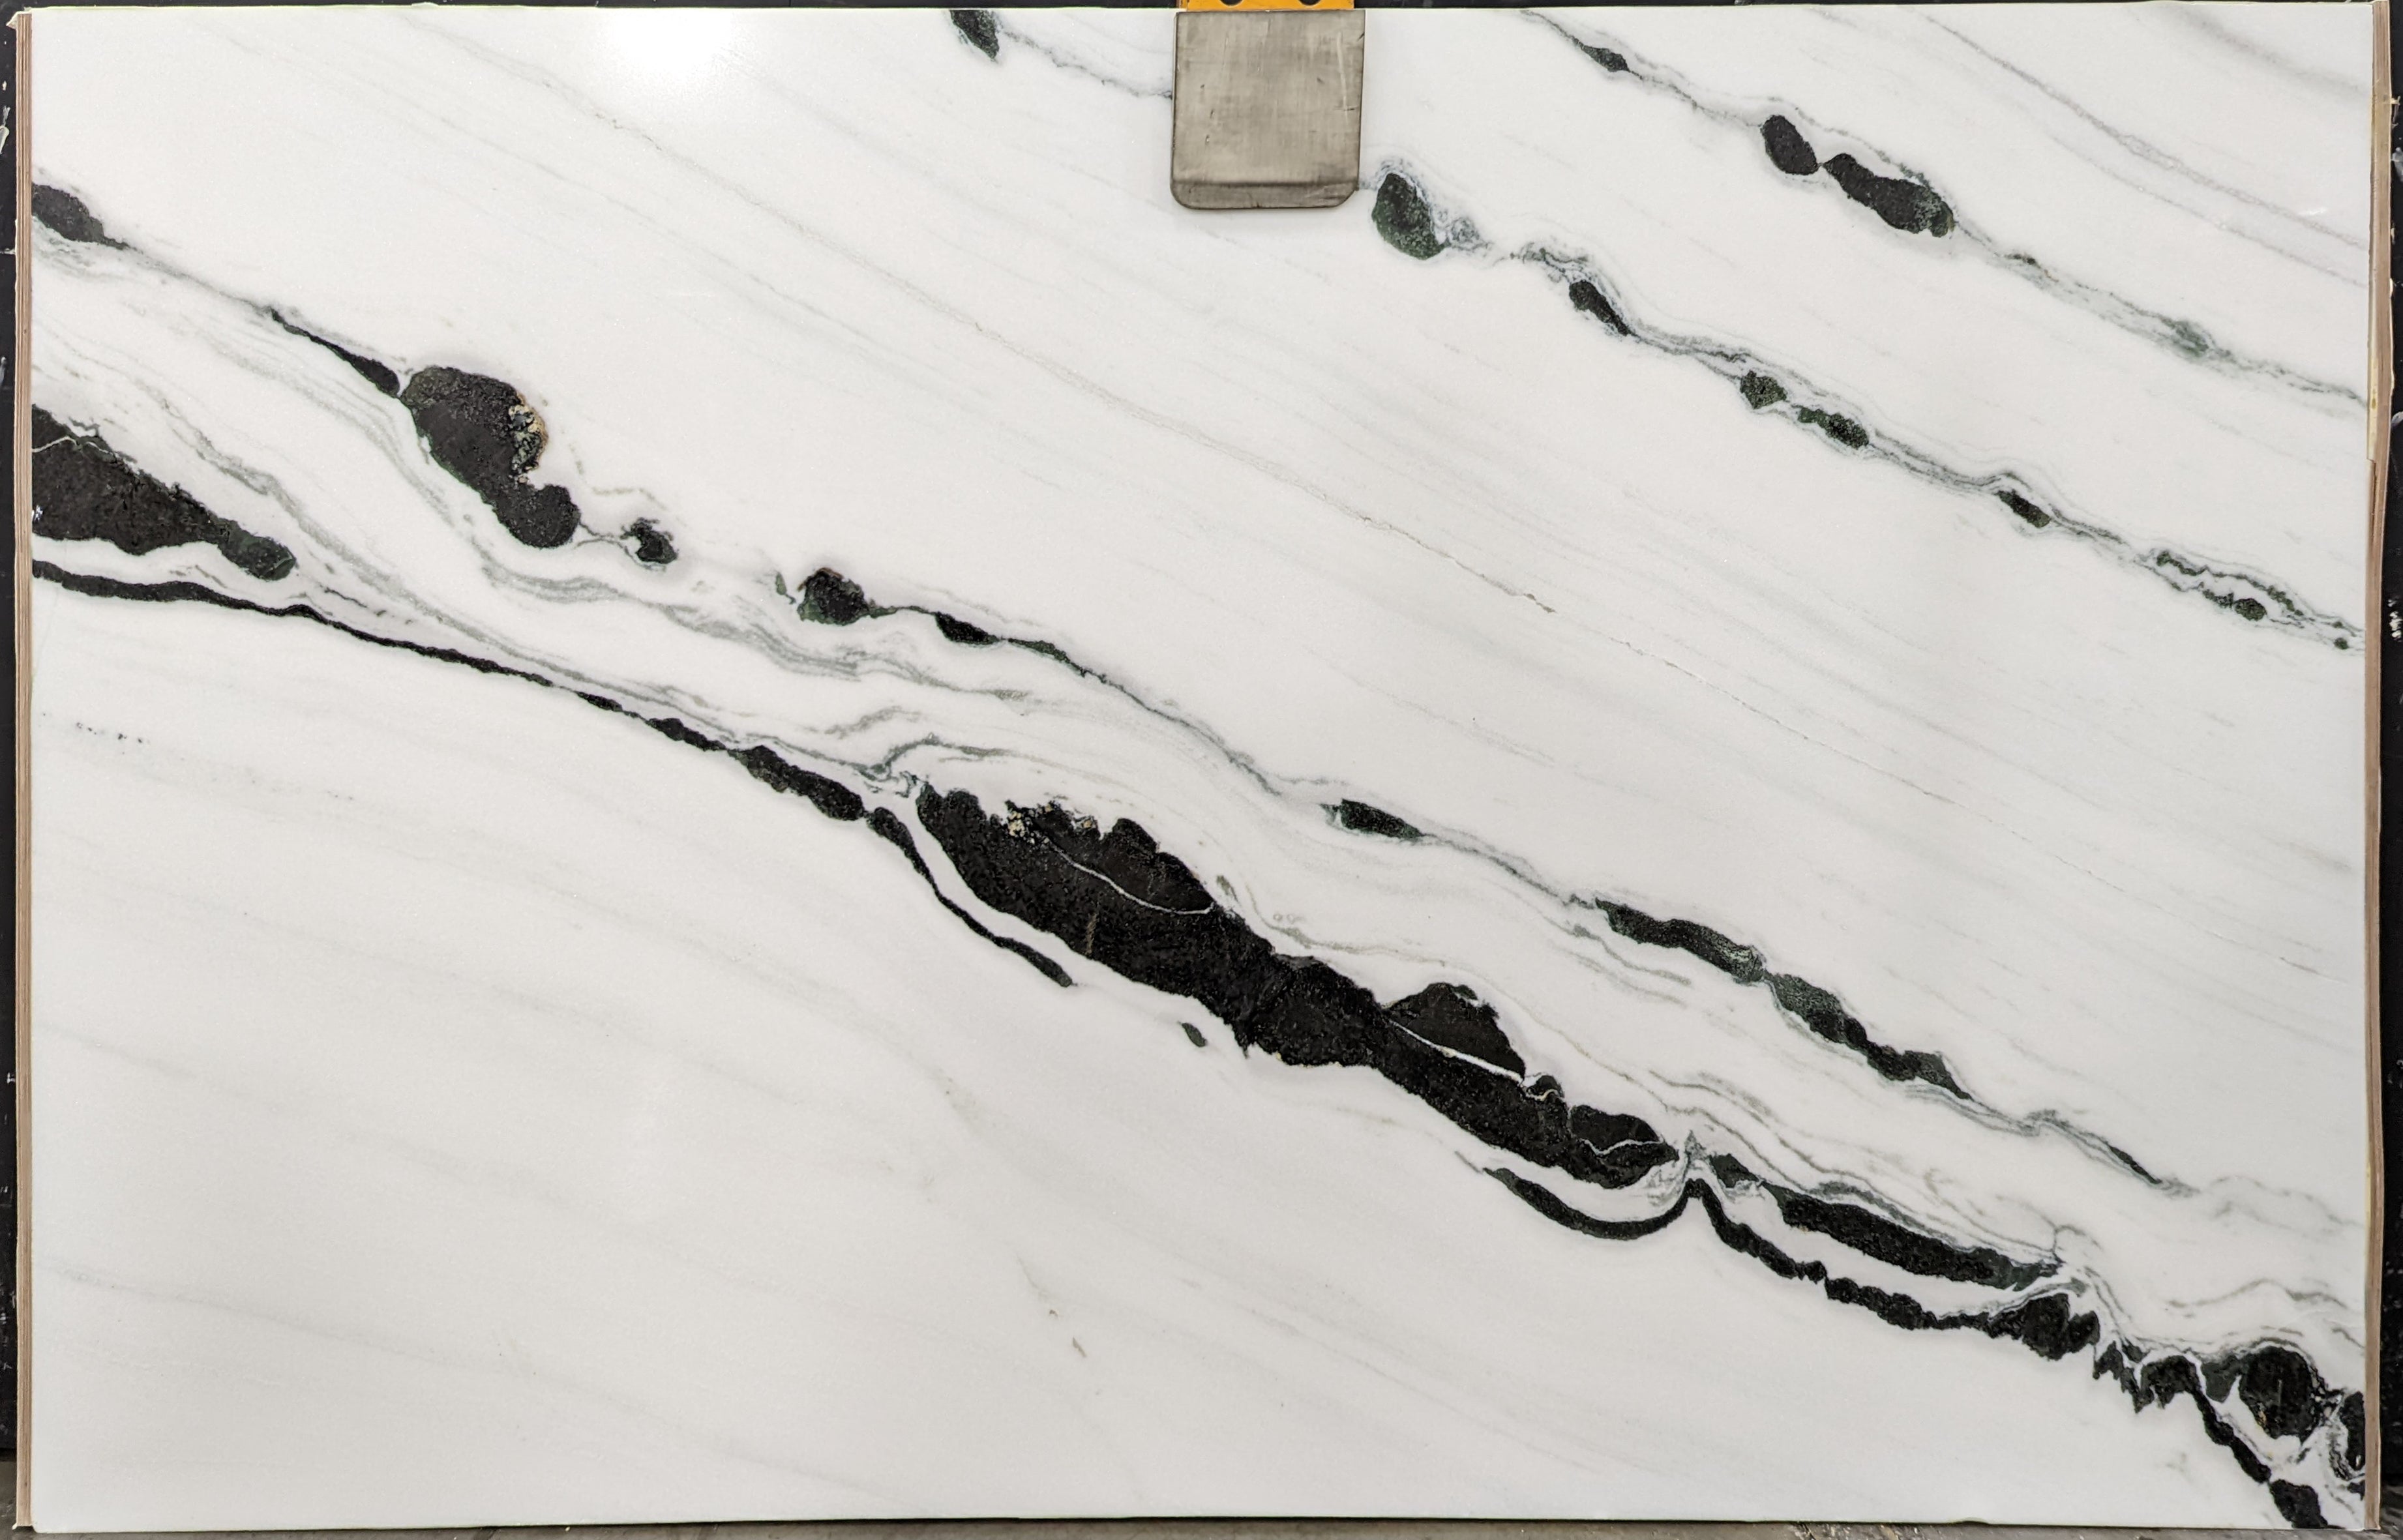  Panda White Marble Slab 3/4  Polished Stone - P12722#41 -  66x104 